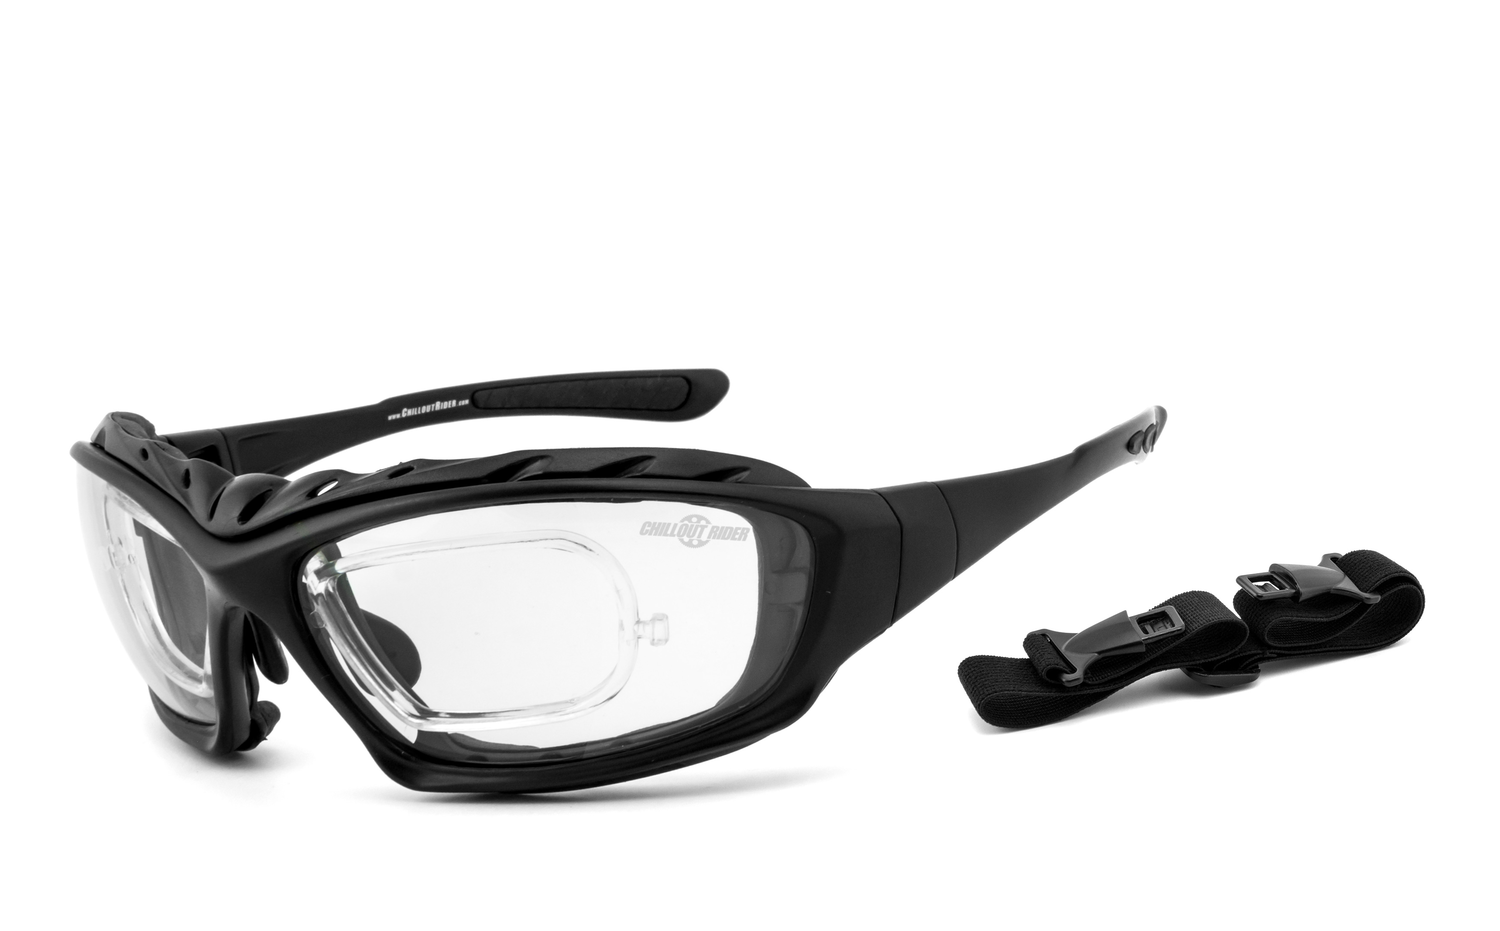 CHILLOUT RIDER | gepolsterte Multifunktionsbrille, Motorradbrille, Motorrad-Sonnenbrille, Bikerbrille, winddicht